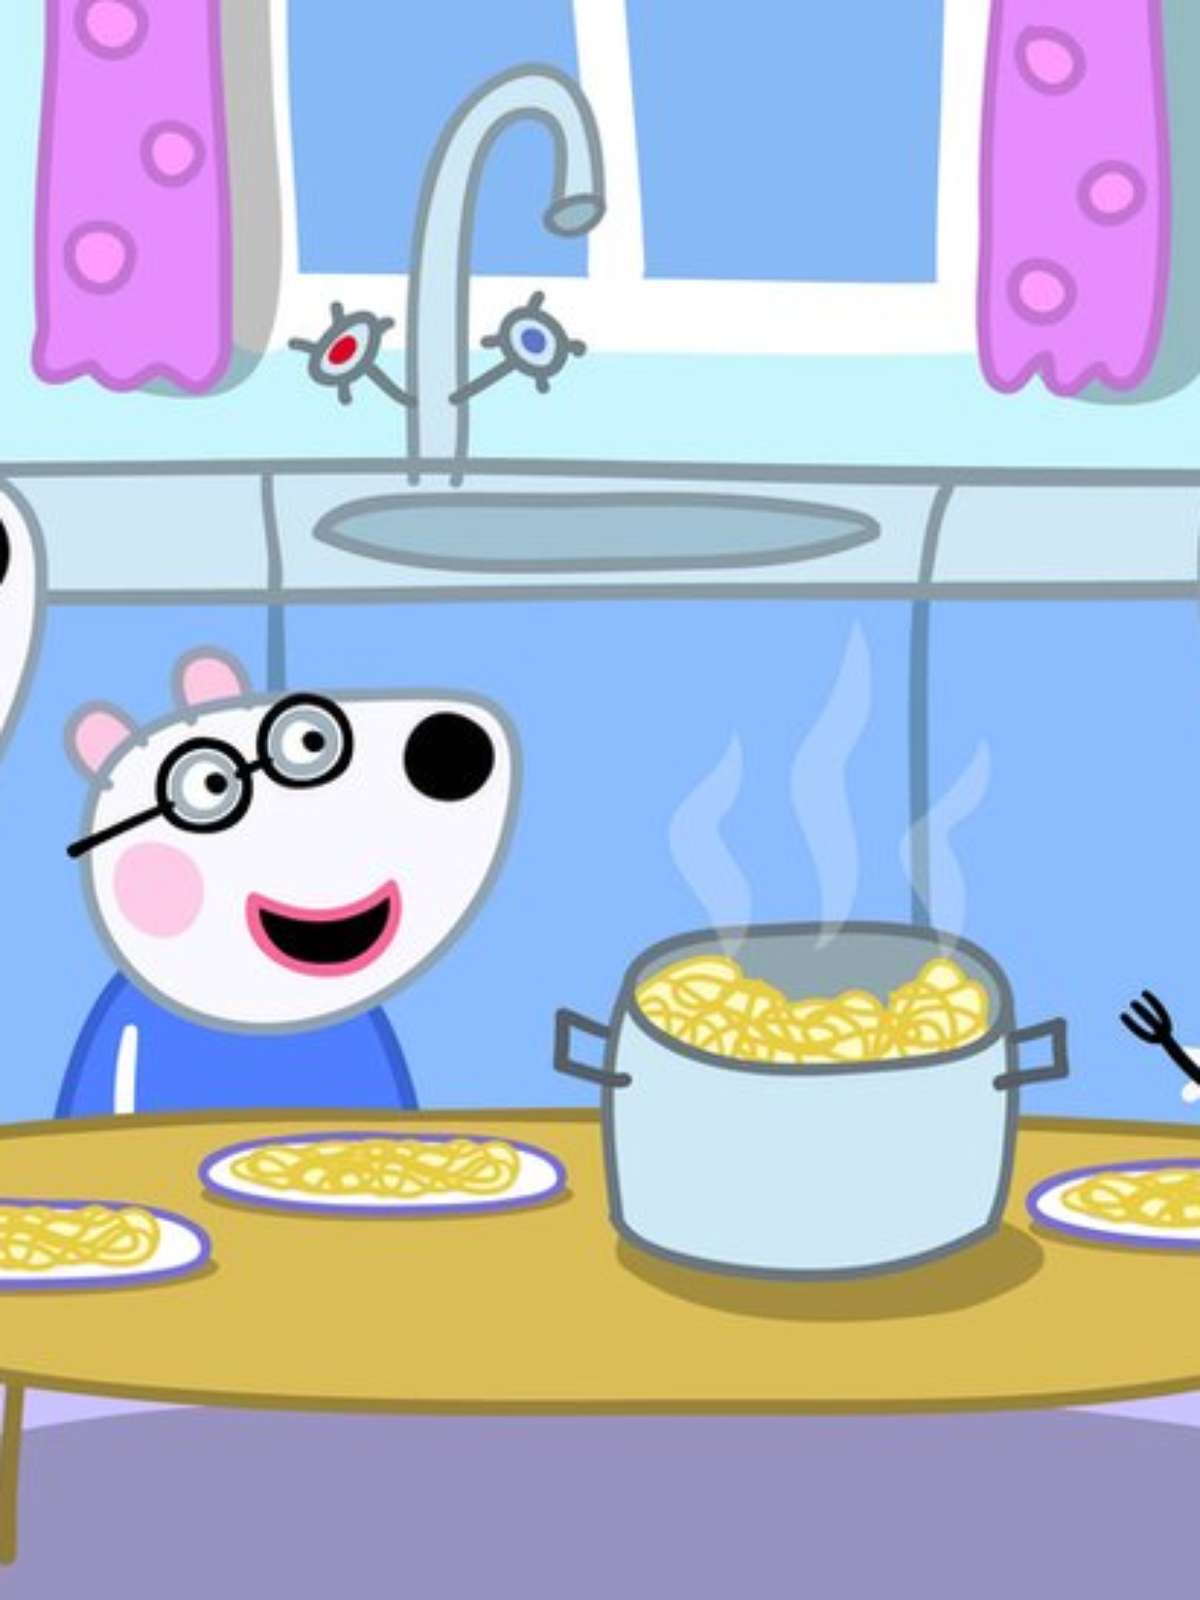 Novo episódio do desenho infantil Peppa Pig apresenta personagens  homossexuais